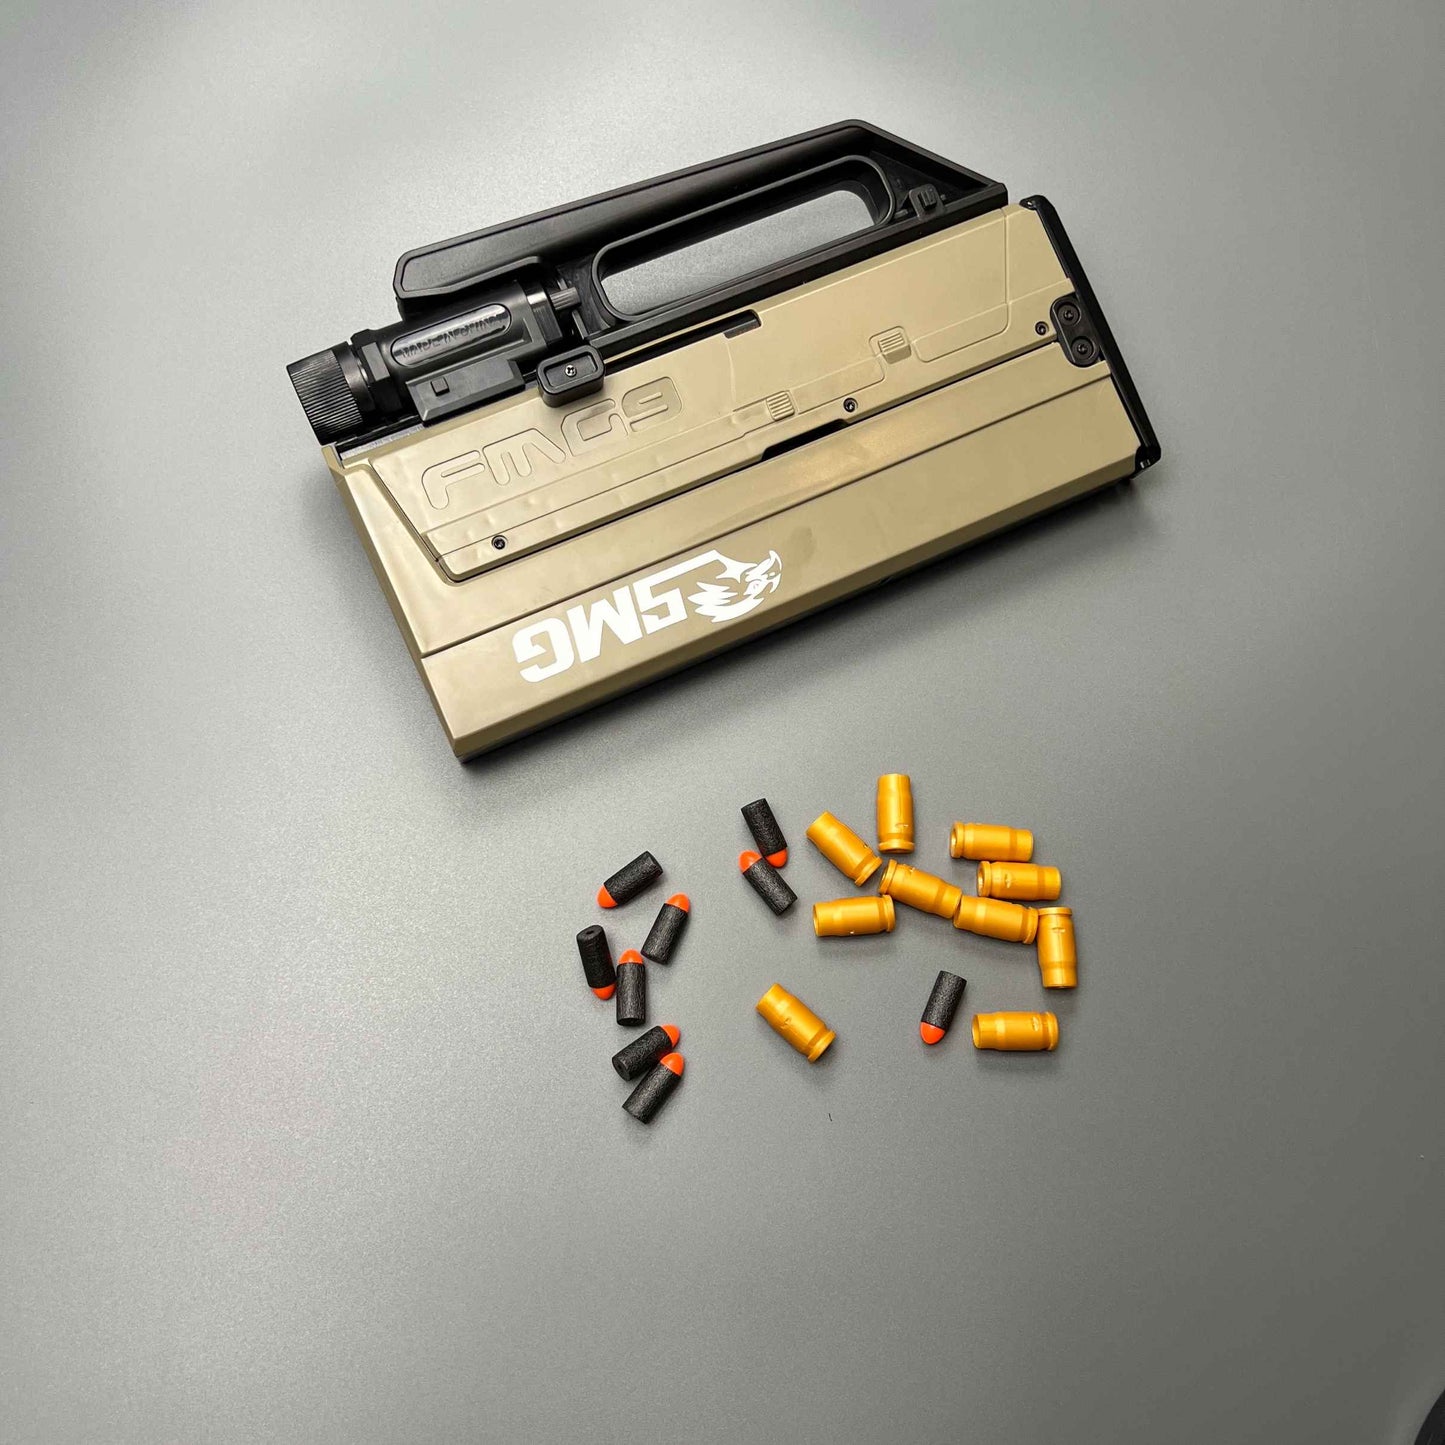 FMG9 Manual Soft Bullet Blaster